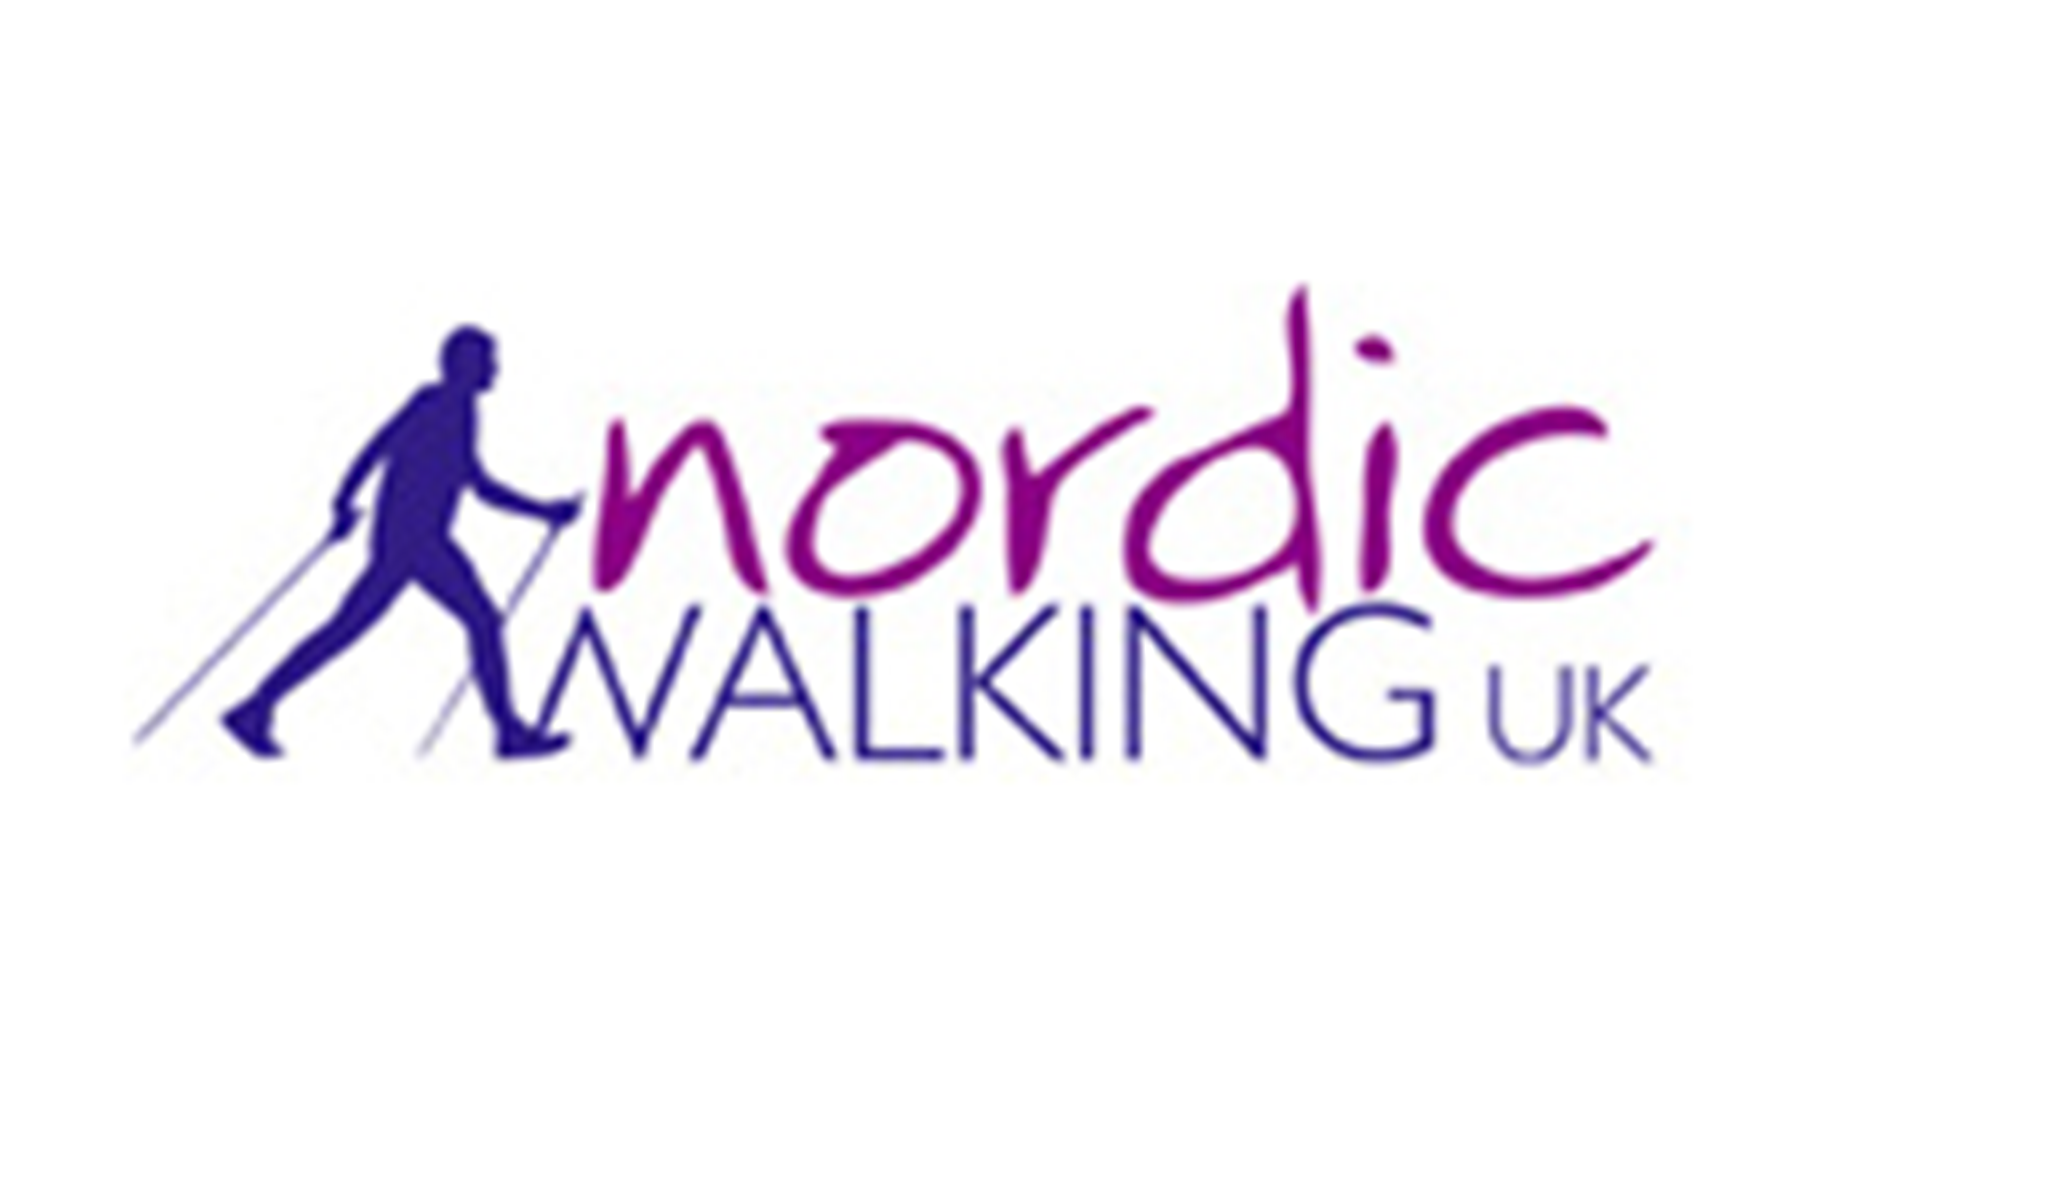 Nordic Walking UK - Logo.png